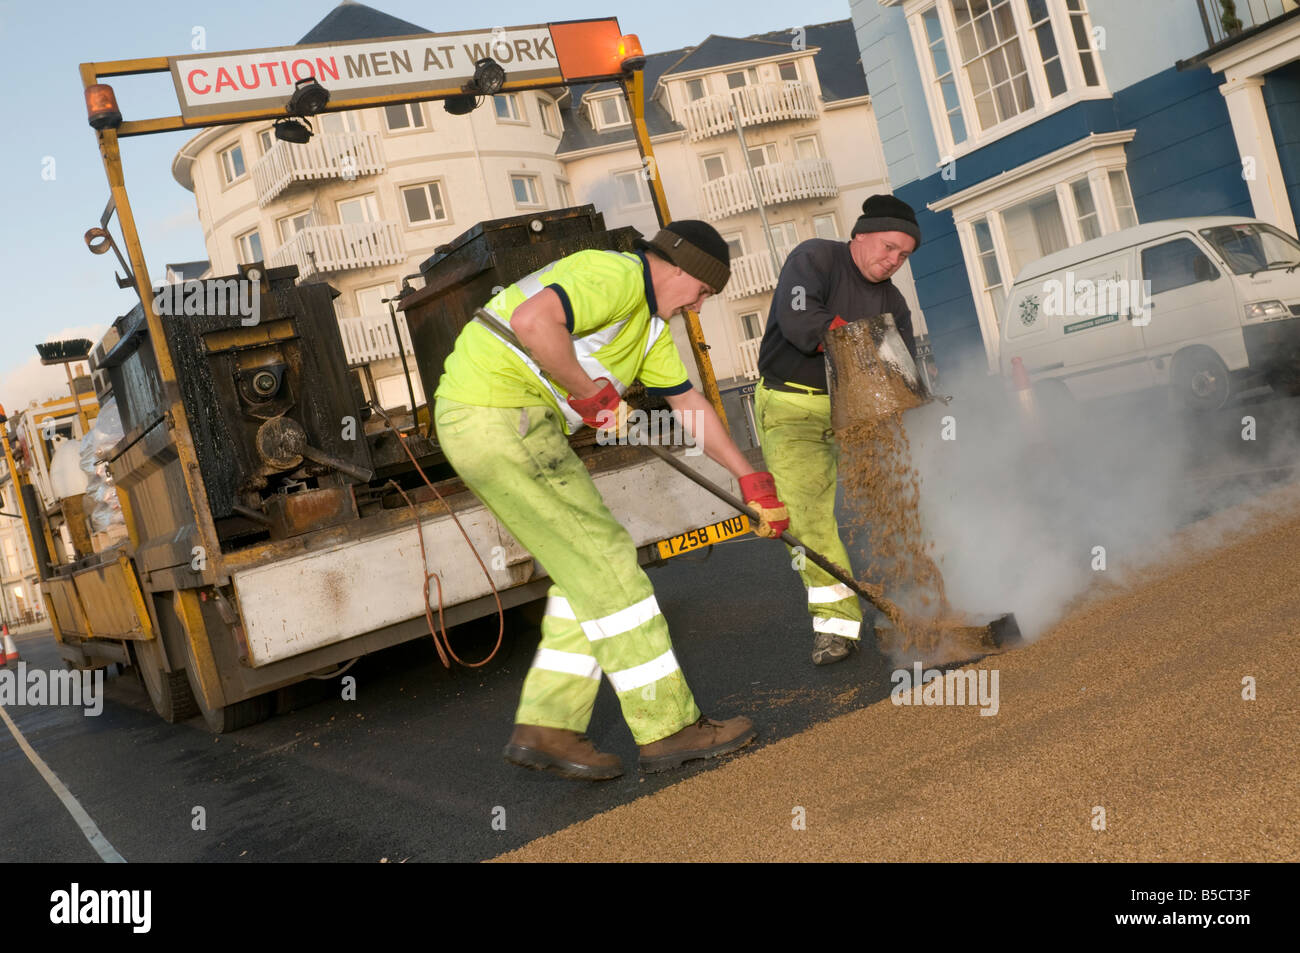 Zwei Männer mit hoher Reibung anti-rutschfeste Straße Oberfläche "Vorsicht Männer zur Arbeit", Aberystwyth Wales UK Stockfoto